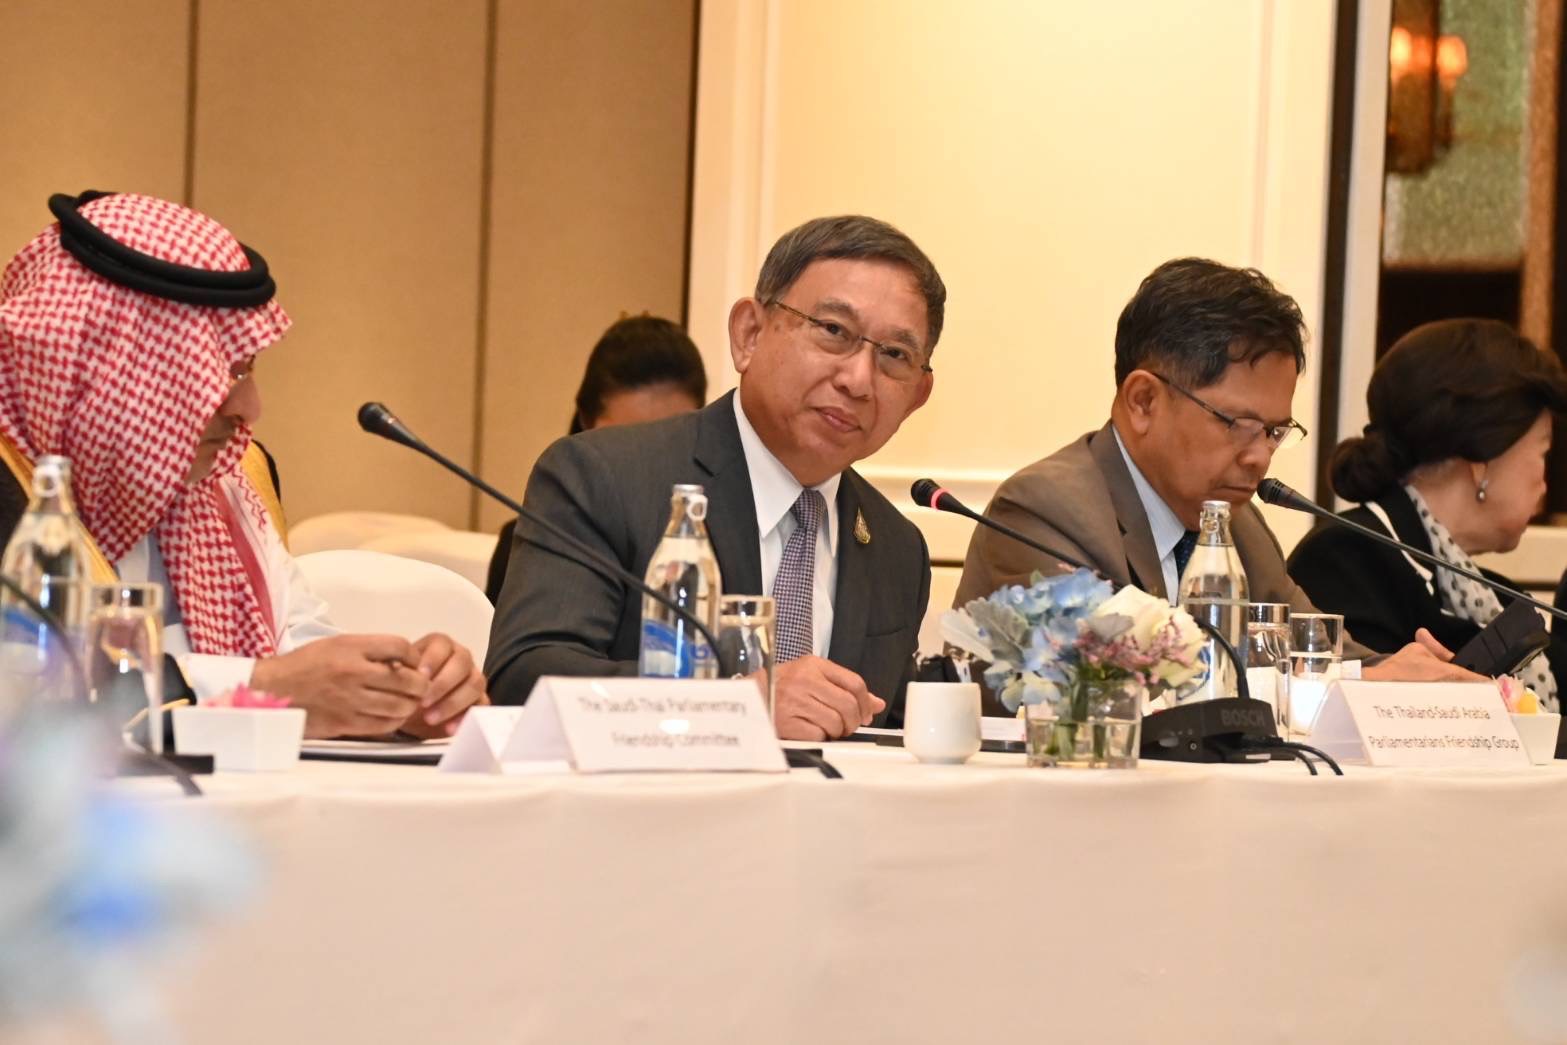 การประชุมหารือร่วมกับคณะกรรมาธิการมิตรภาพรัฐสภาซาอุดี-ไทย ในโอกาสเดินทางเยือนประเทศไทยอย่างเป็นทางการในฐานะแขกของรัฐสภา ระหว่างวันที่ 27 กุมภาพันธ์-1 มีนาคม 2567